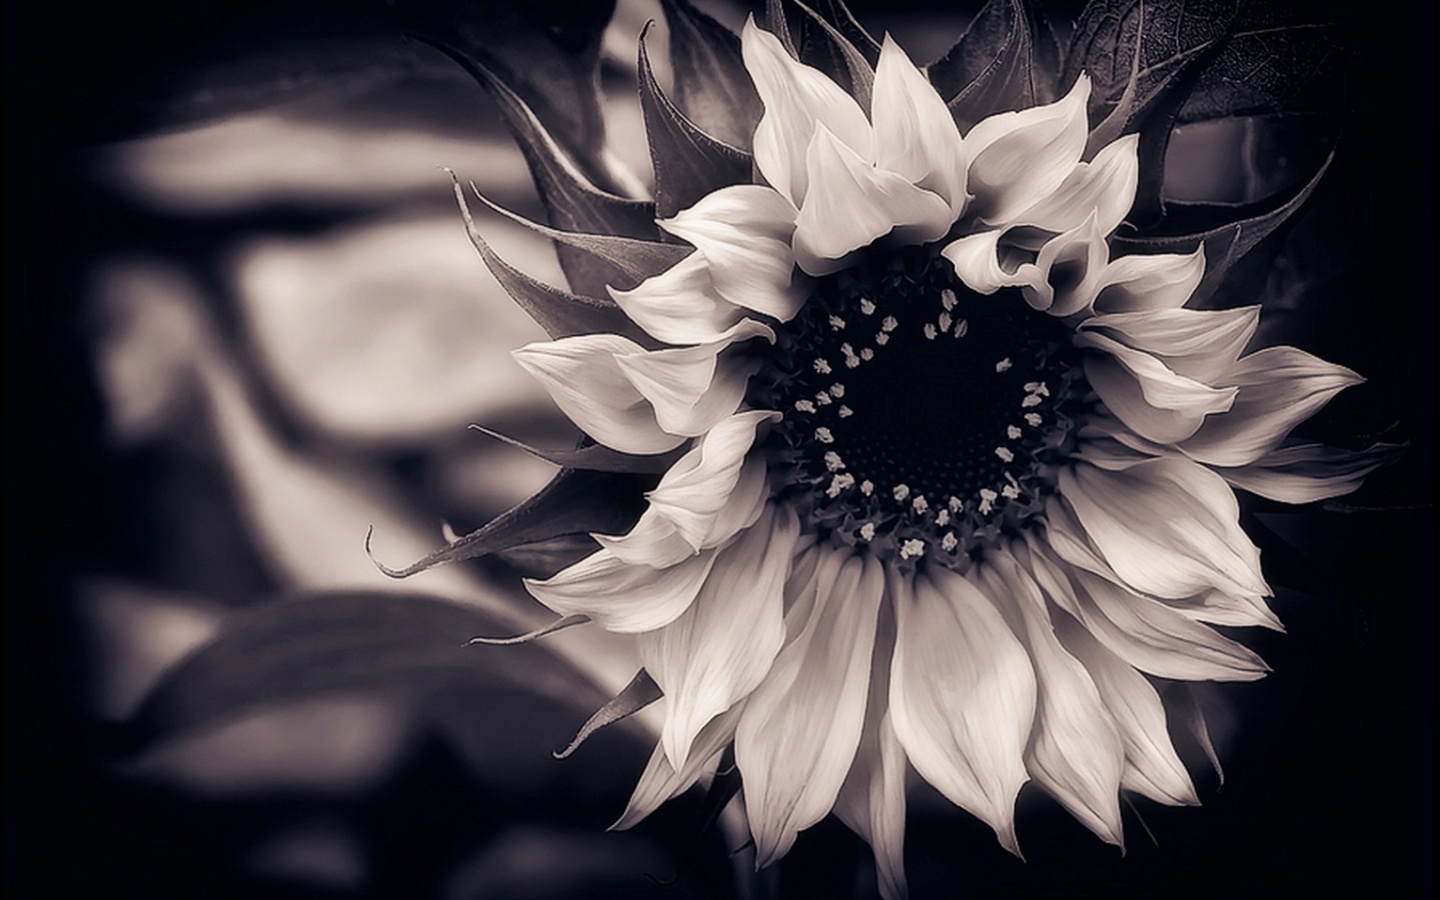 Sunflower Black and White Flower Wallpaper